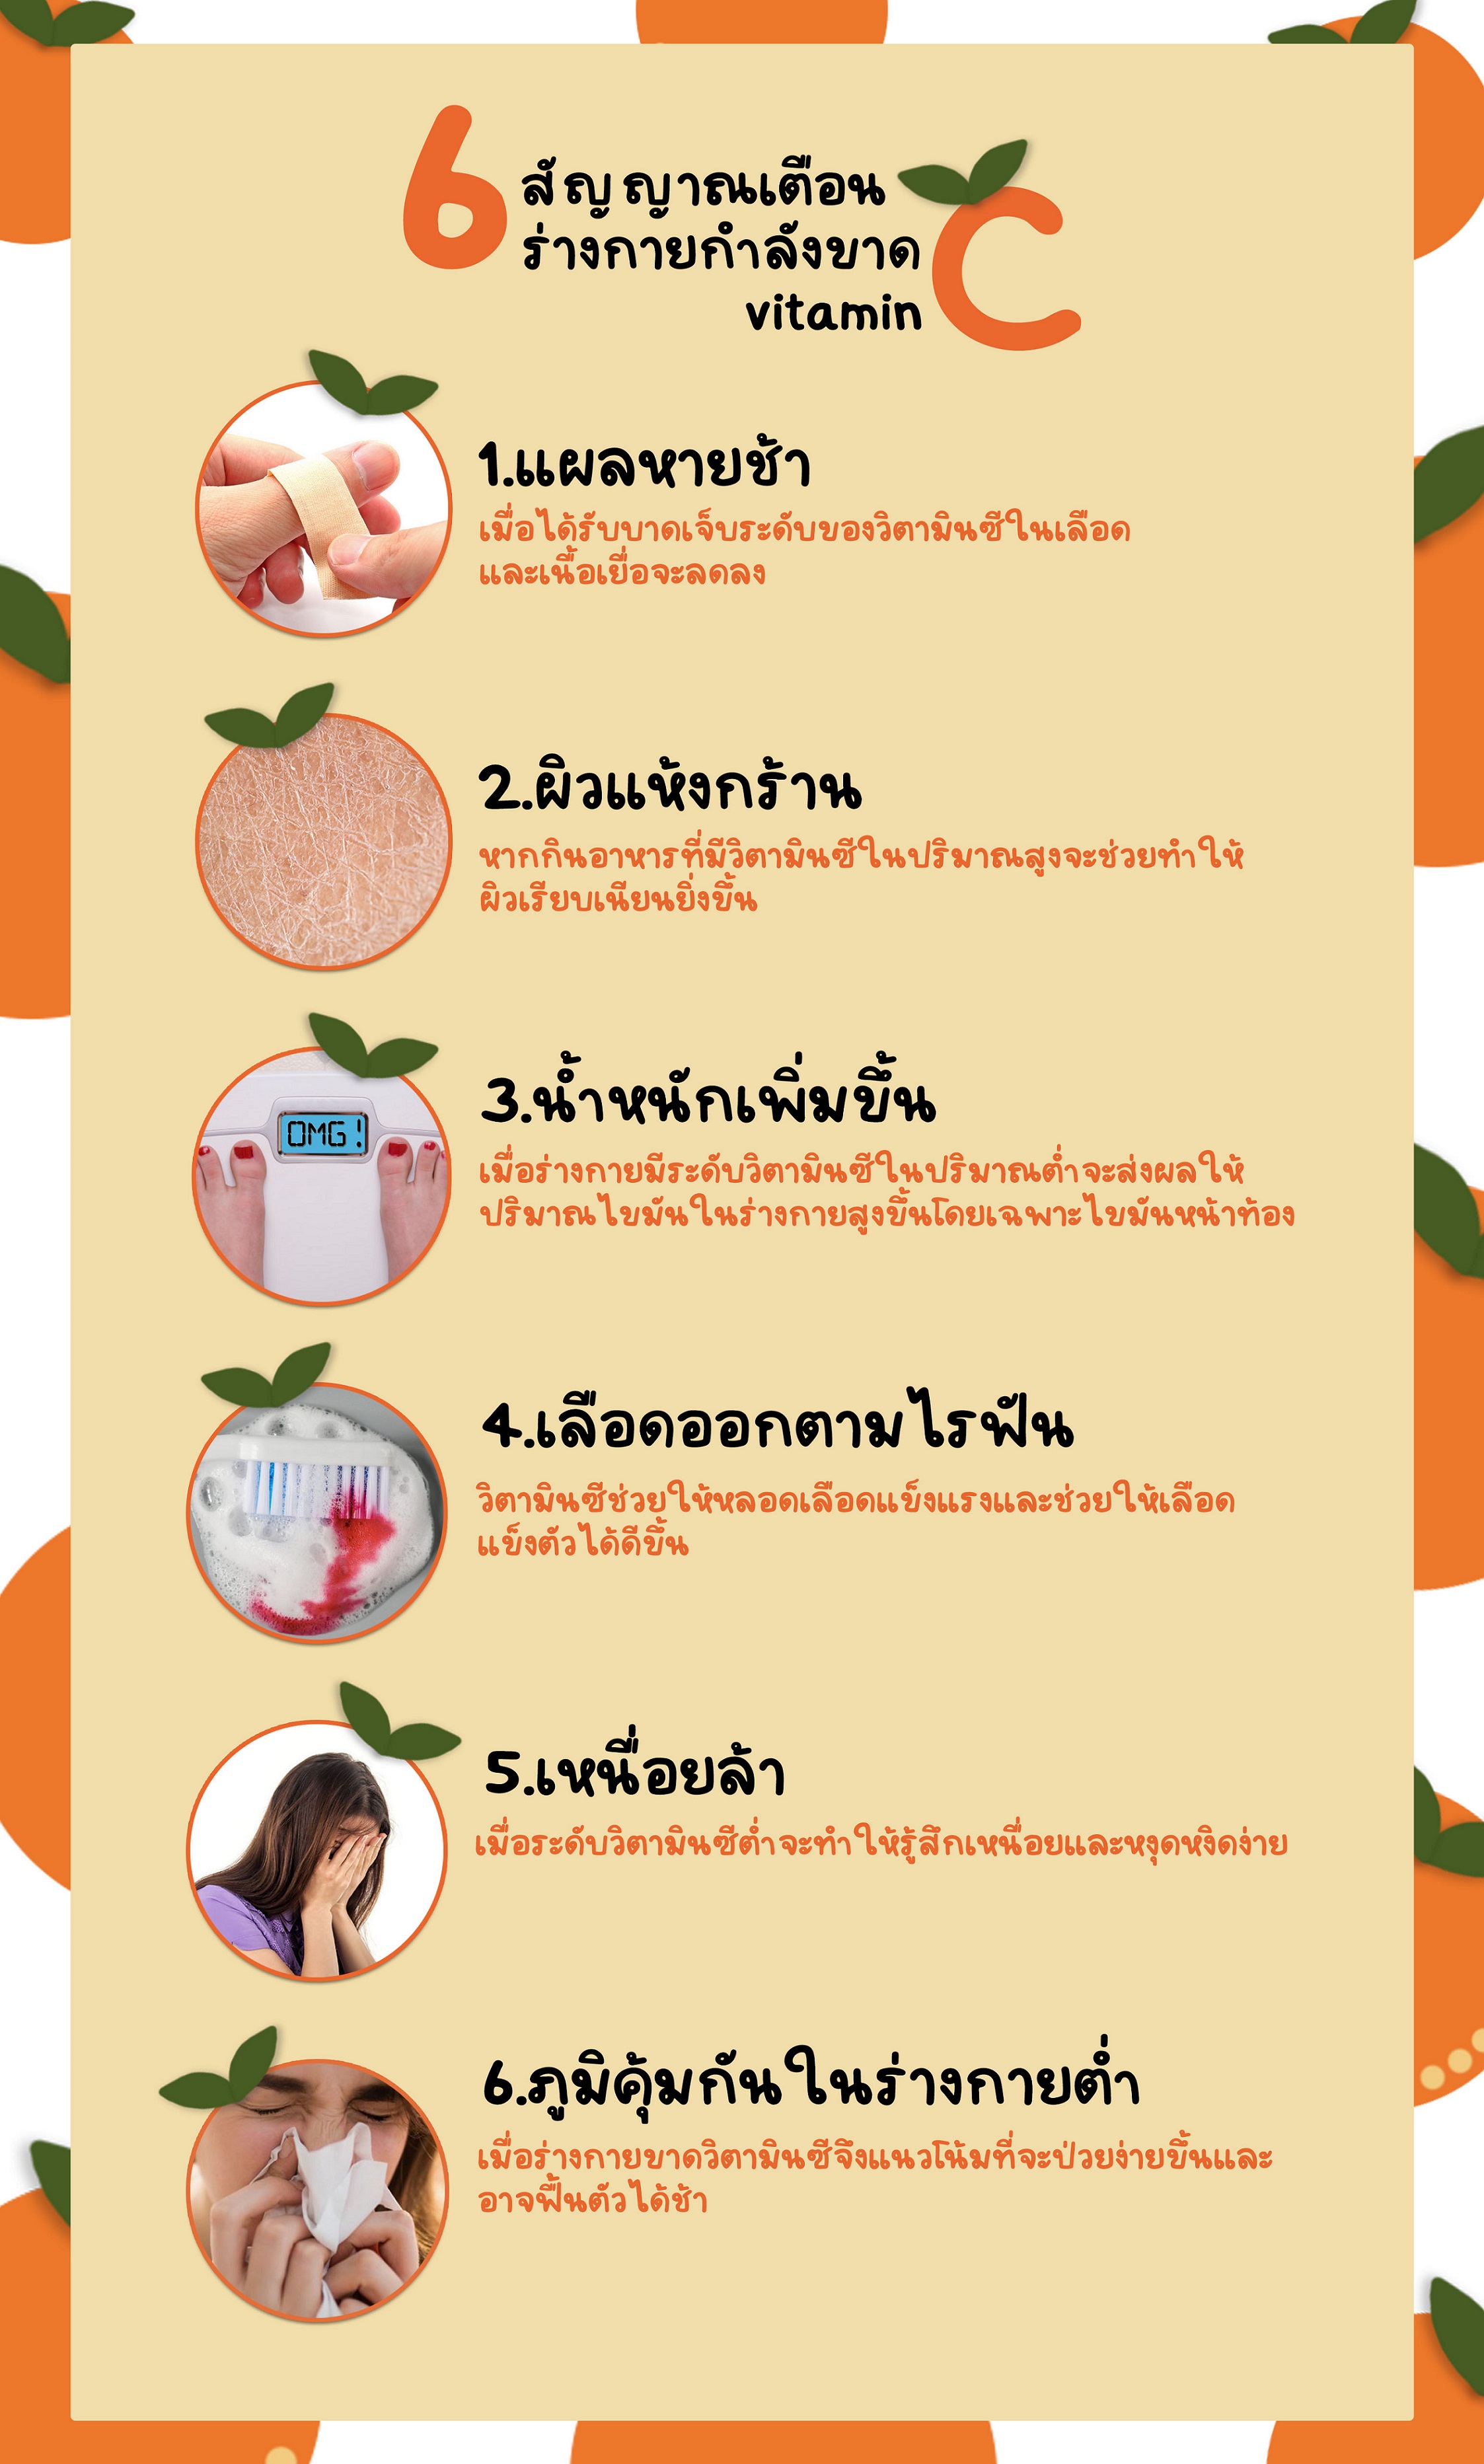 6 สัญญาณเตือน ร่างกายกำลังขาด vitamin C